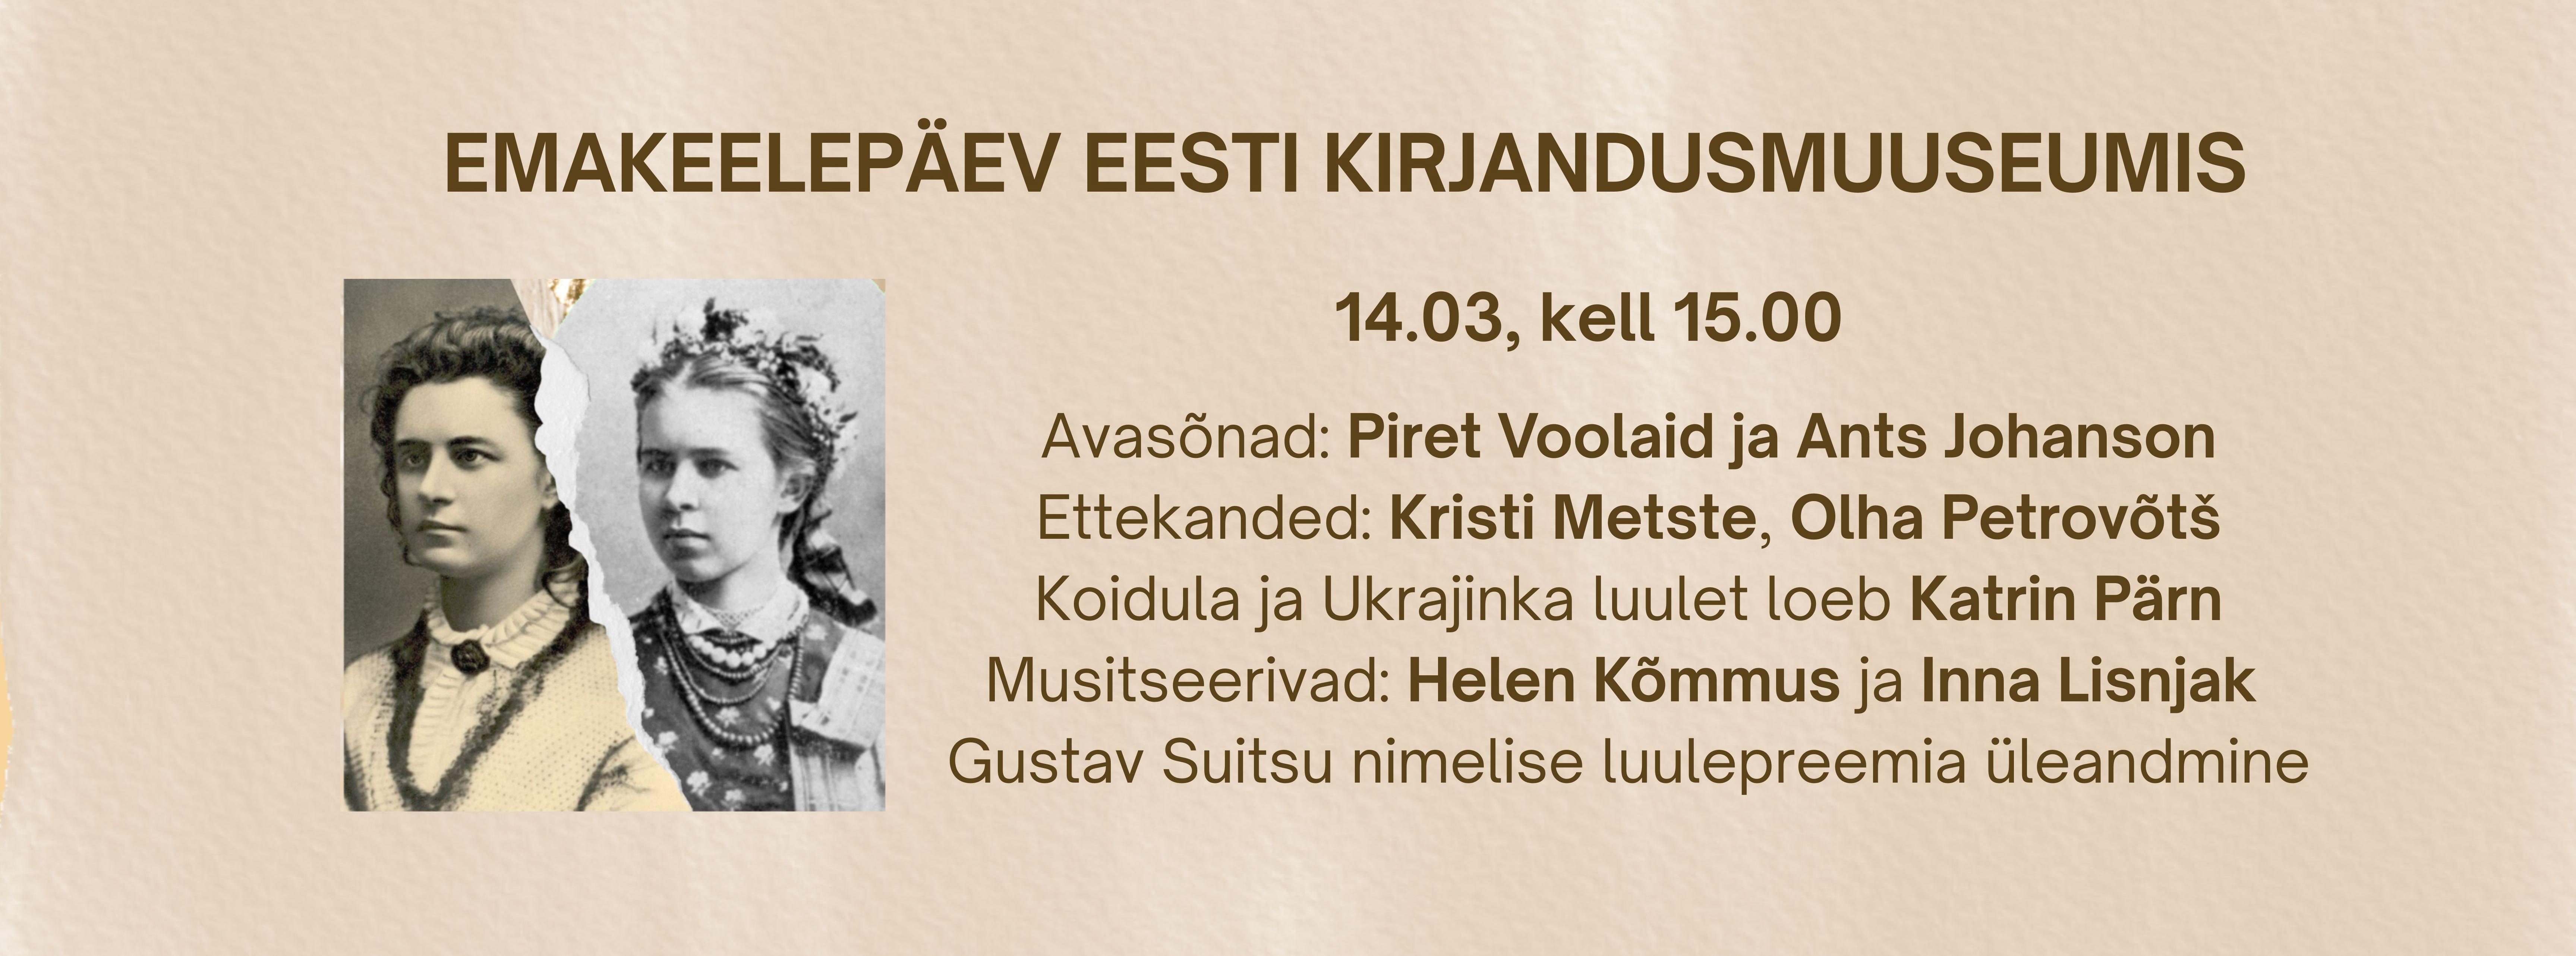 Emakeelepäeva plakat Koidula ja Ukajinka portreedega